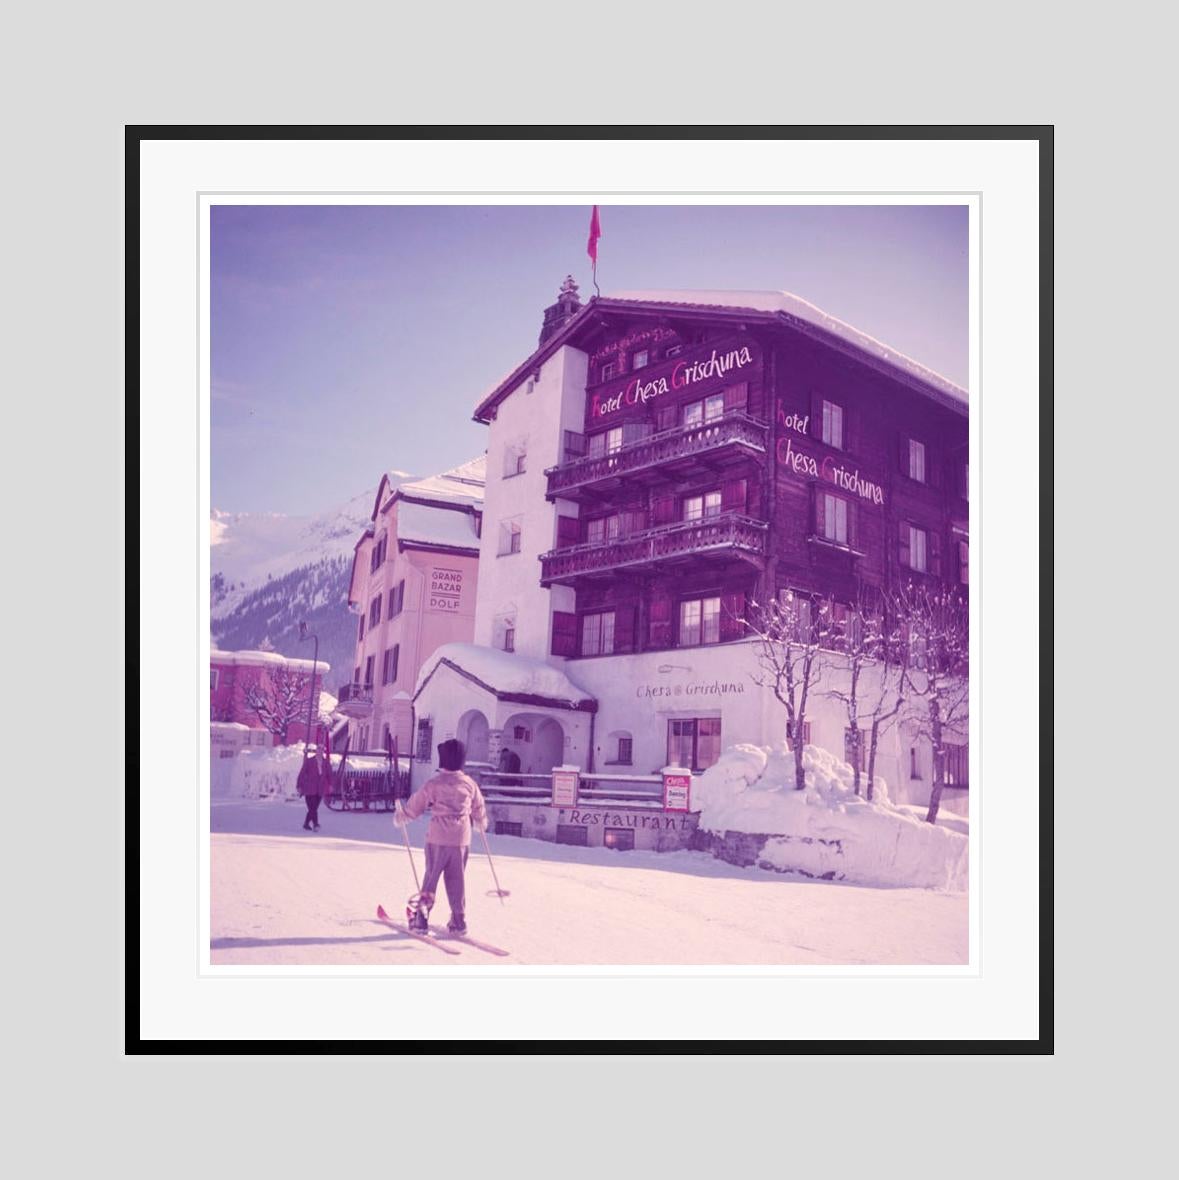 Ein junger Skifahrer 
1954

Ein Kind fährt auf Skiern durch die Straßen von Klosters, Schweiz, 1954.

von Toni Frissell

20 x 20